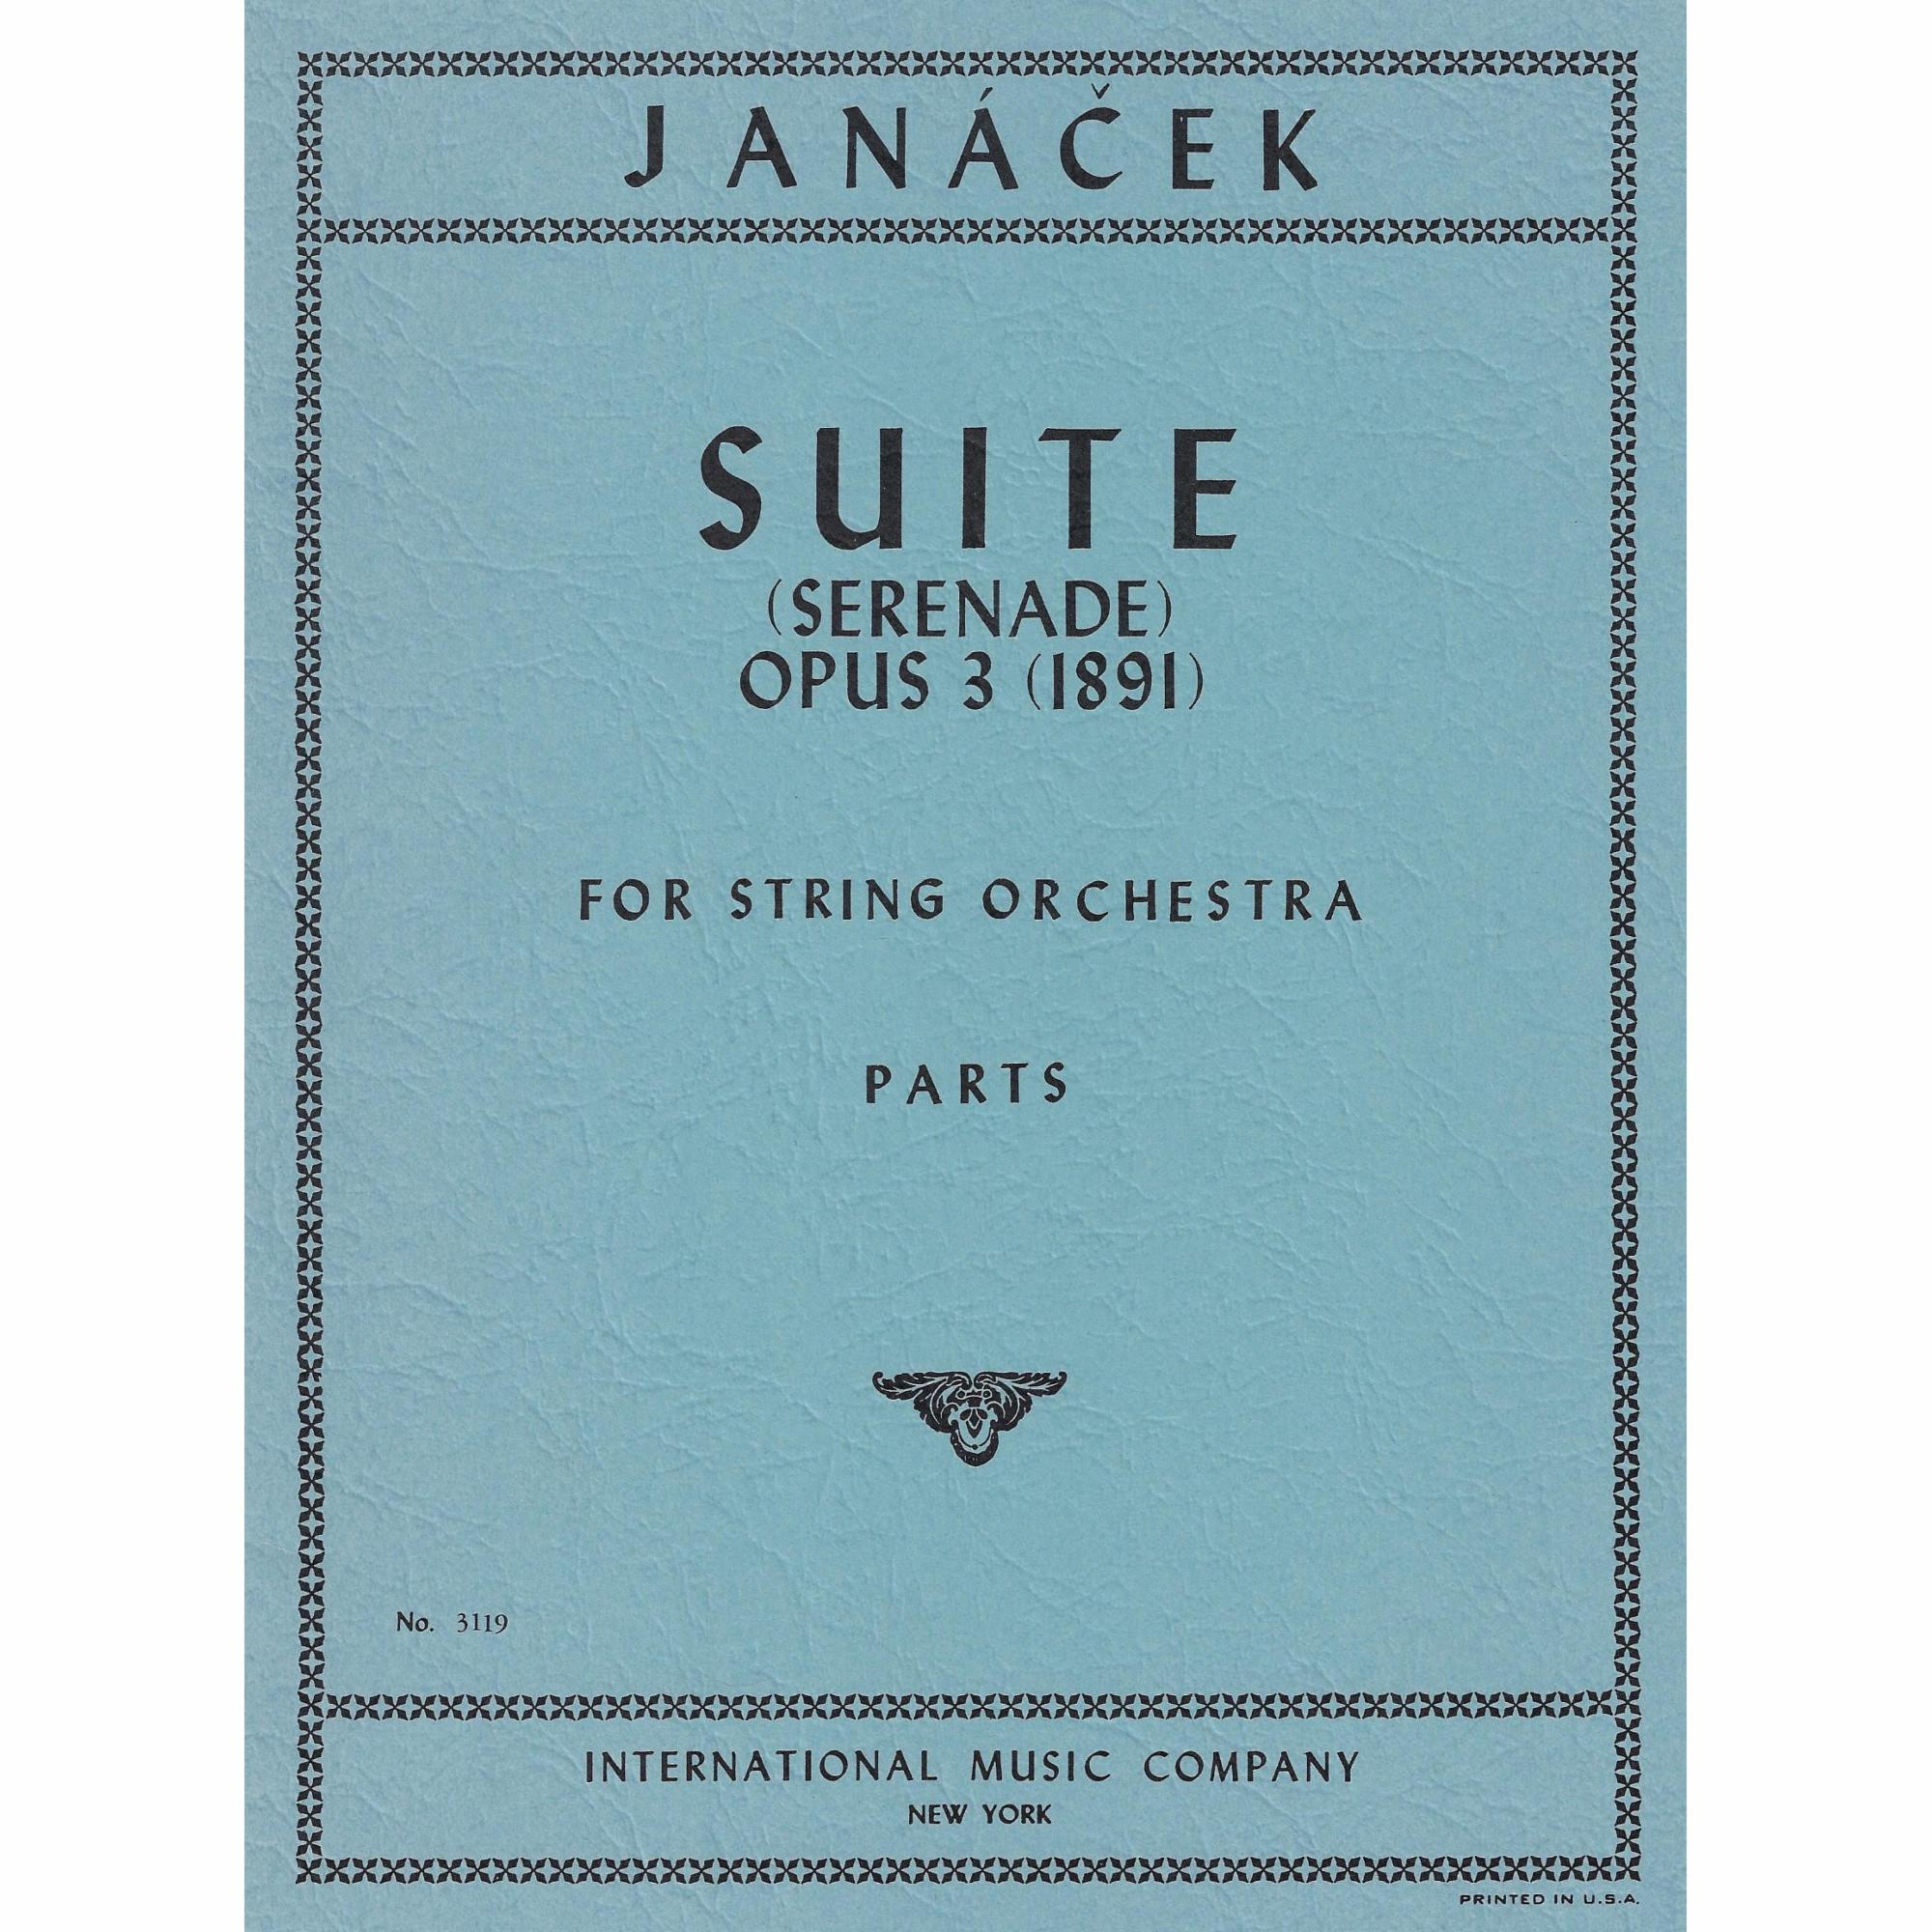 Janacek -- Suite (Serenade), Op. 3 for String Orchestra